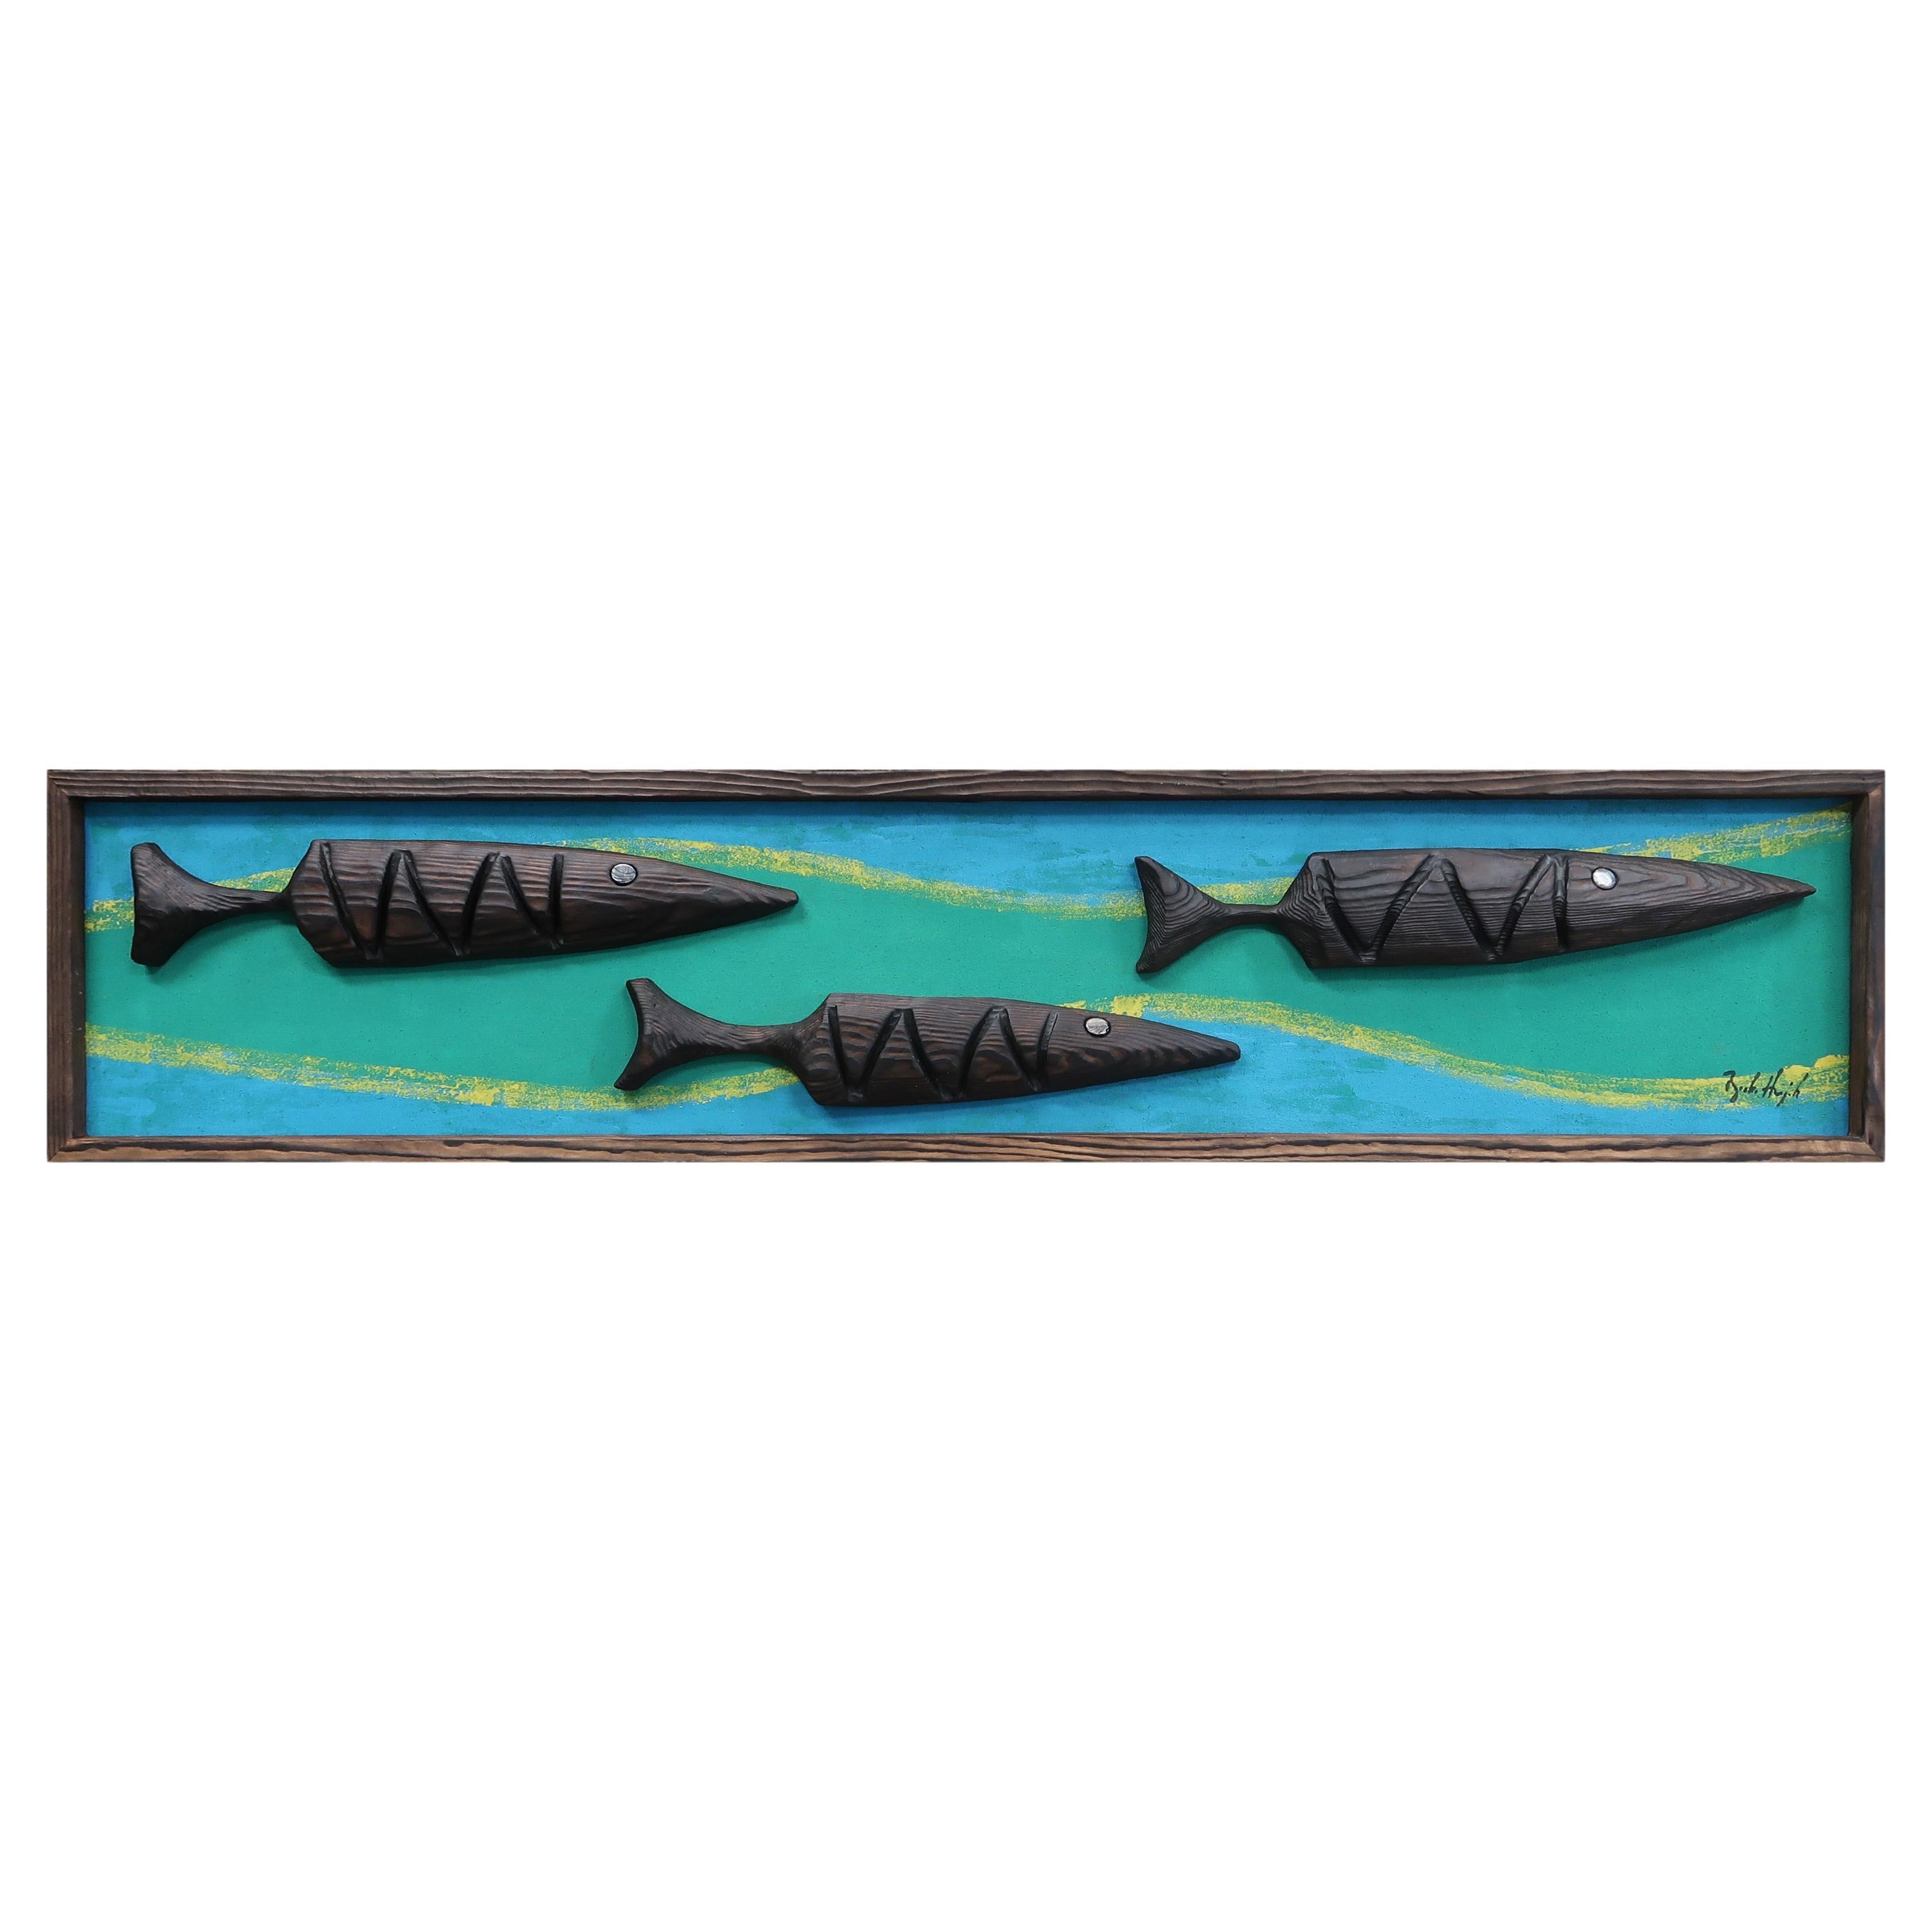 Bosko Hrnjak Original Framed Modernist Art Wall Sculpture Carving "Mod Fish" Big For Sale